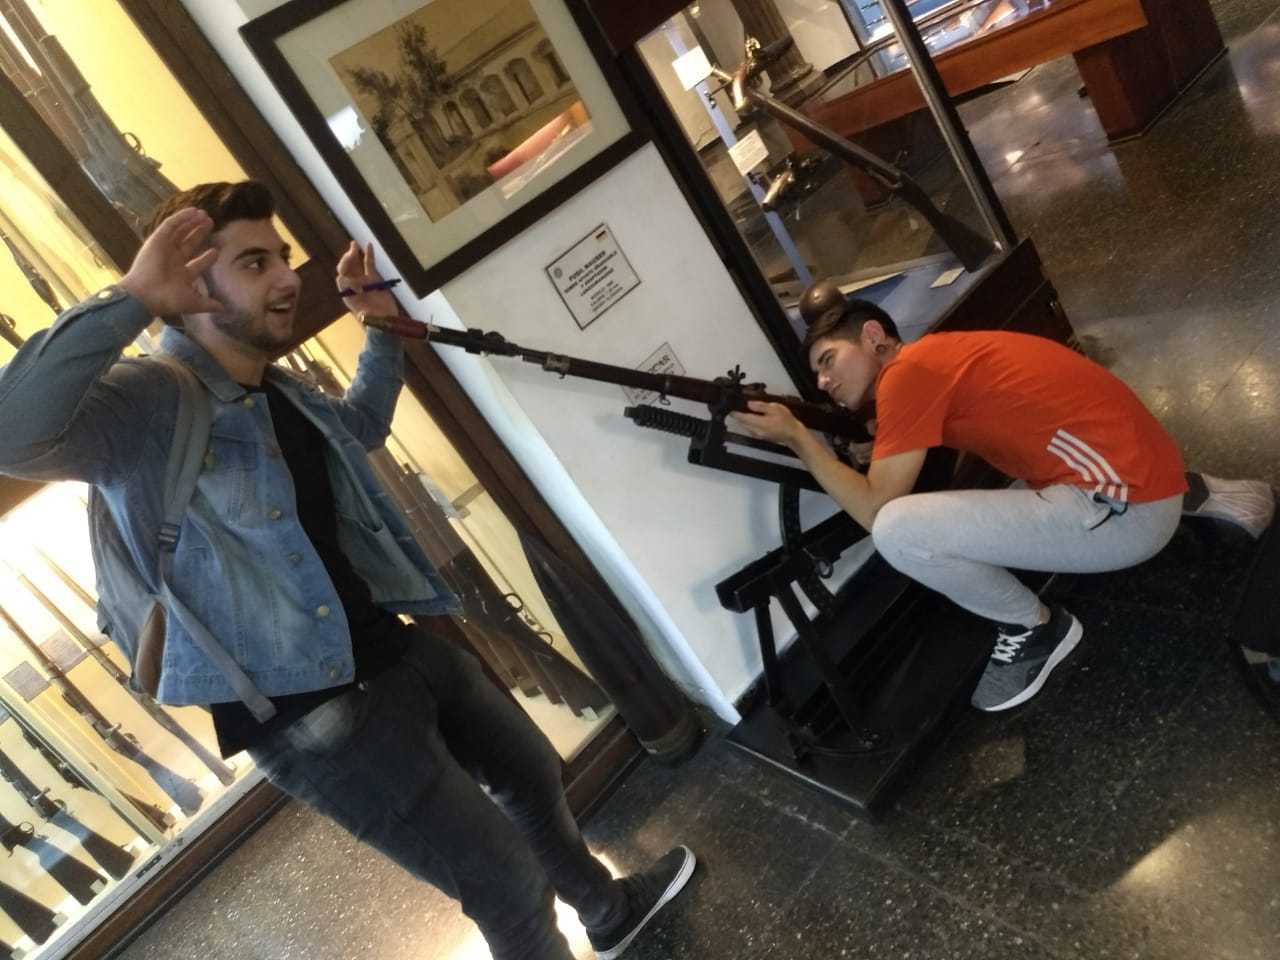 Hombres en un museo de armas - meme